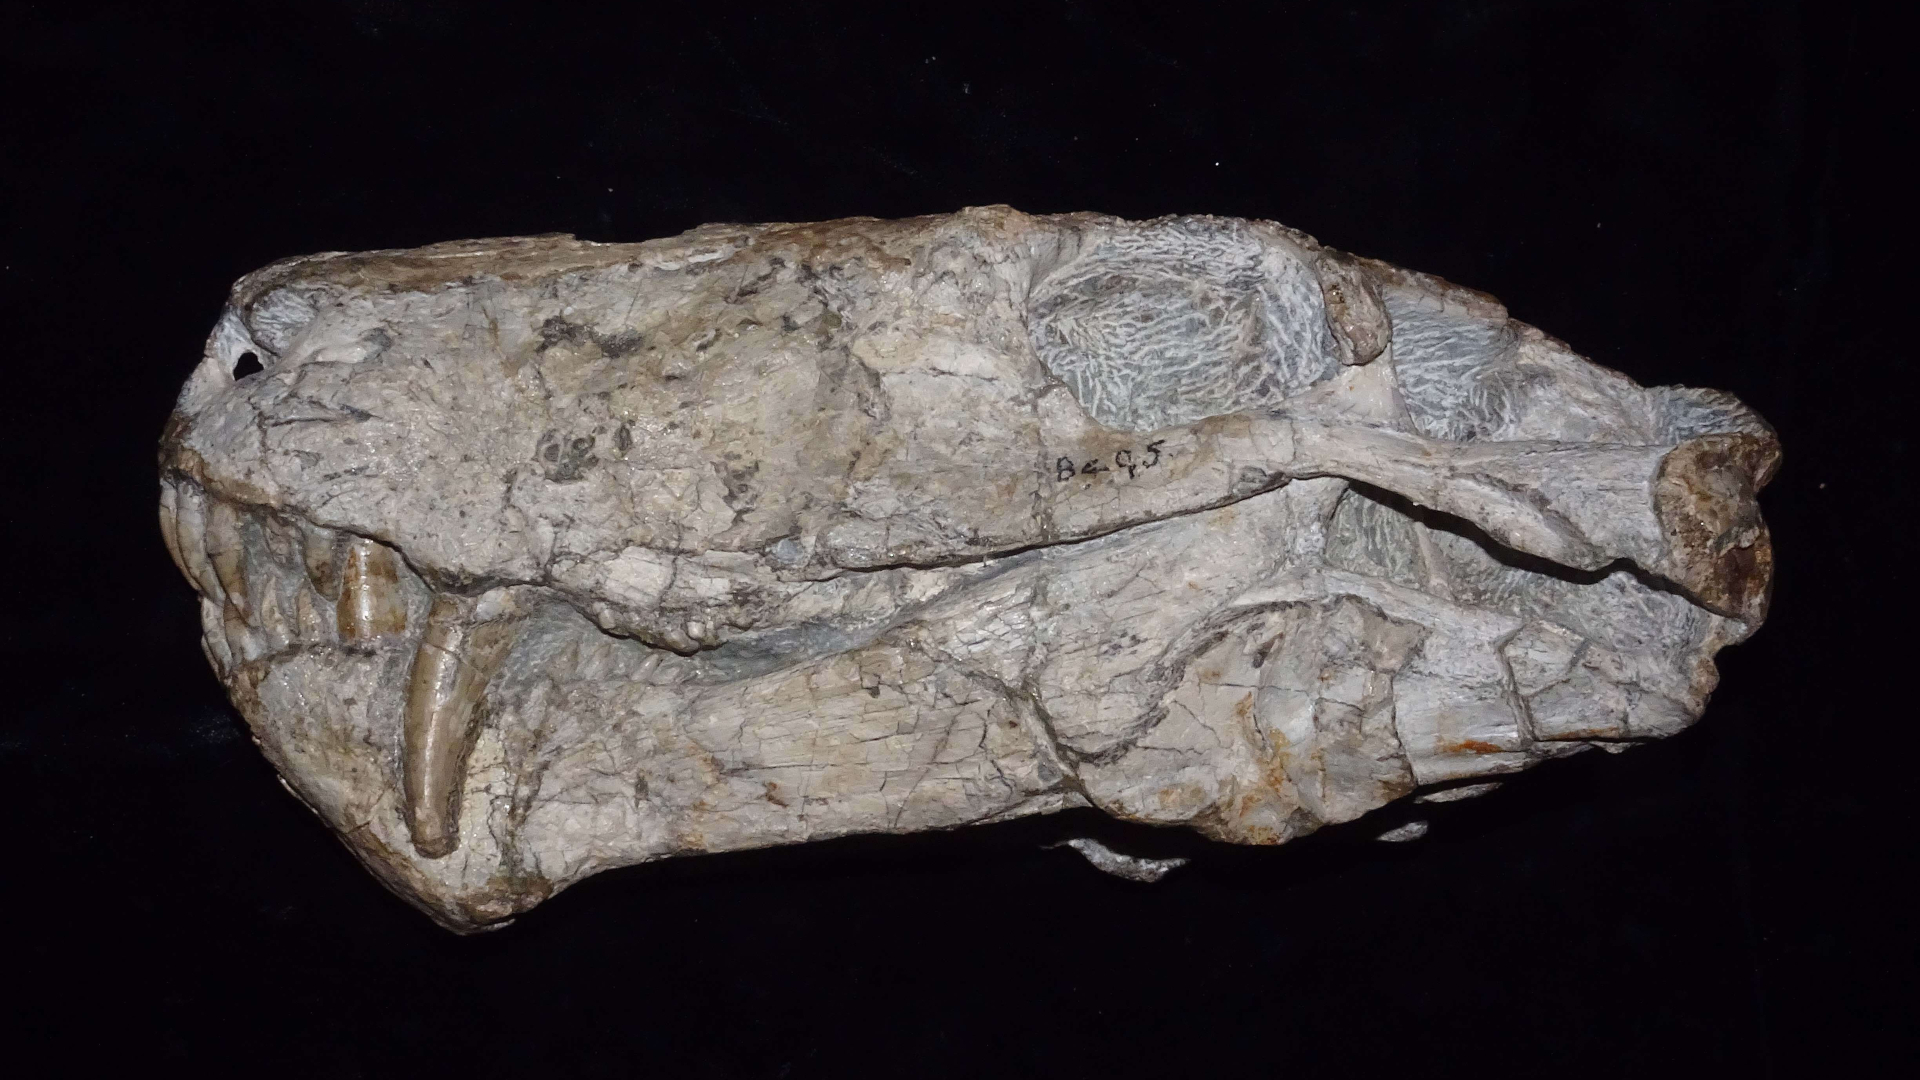 Ein spätpermisches Cyonosaurus-Exemplar, ausgestellt im Iziko South African Museum in Kapstadt, Südafrika.